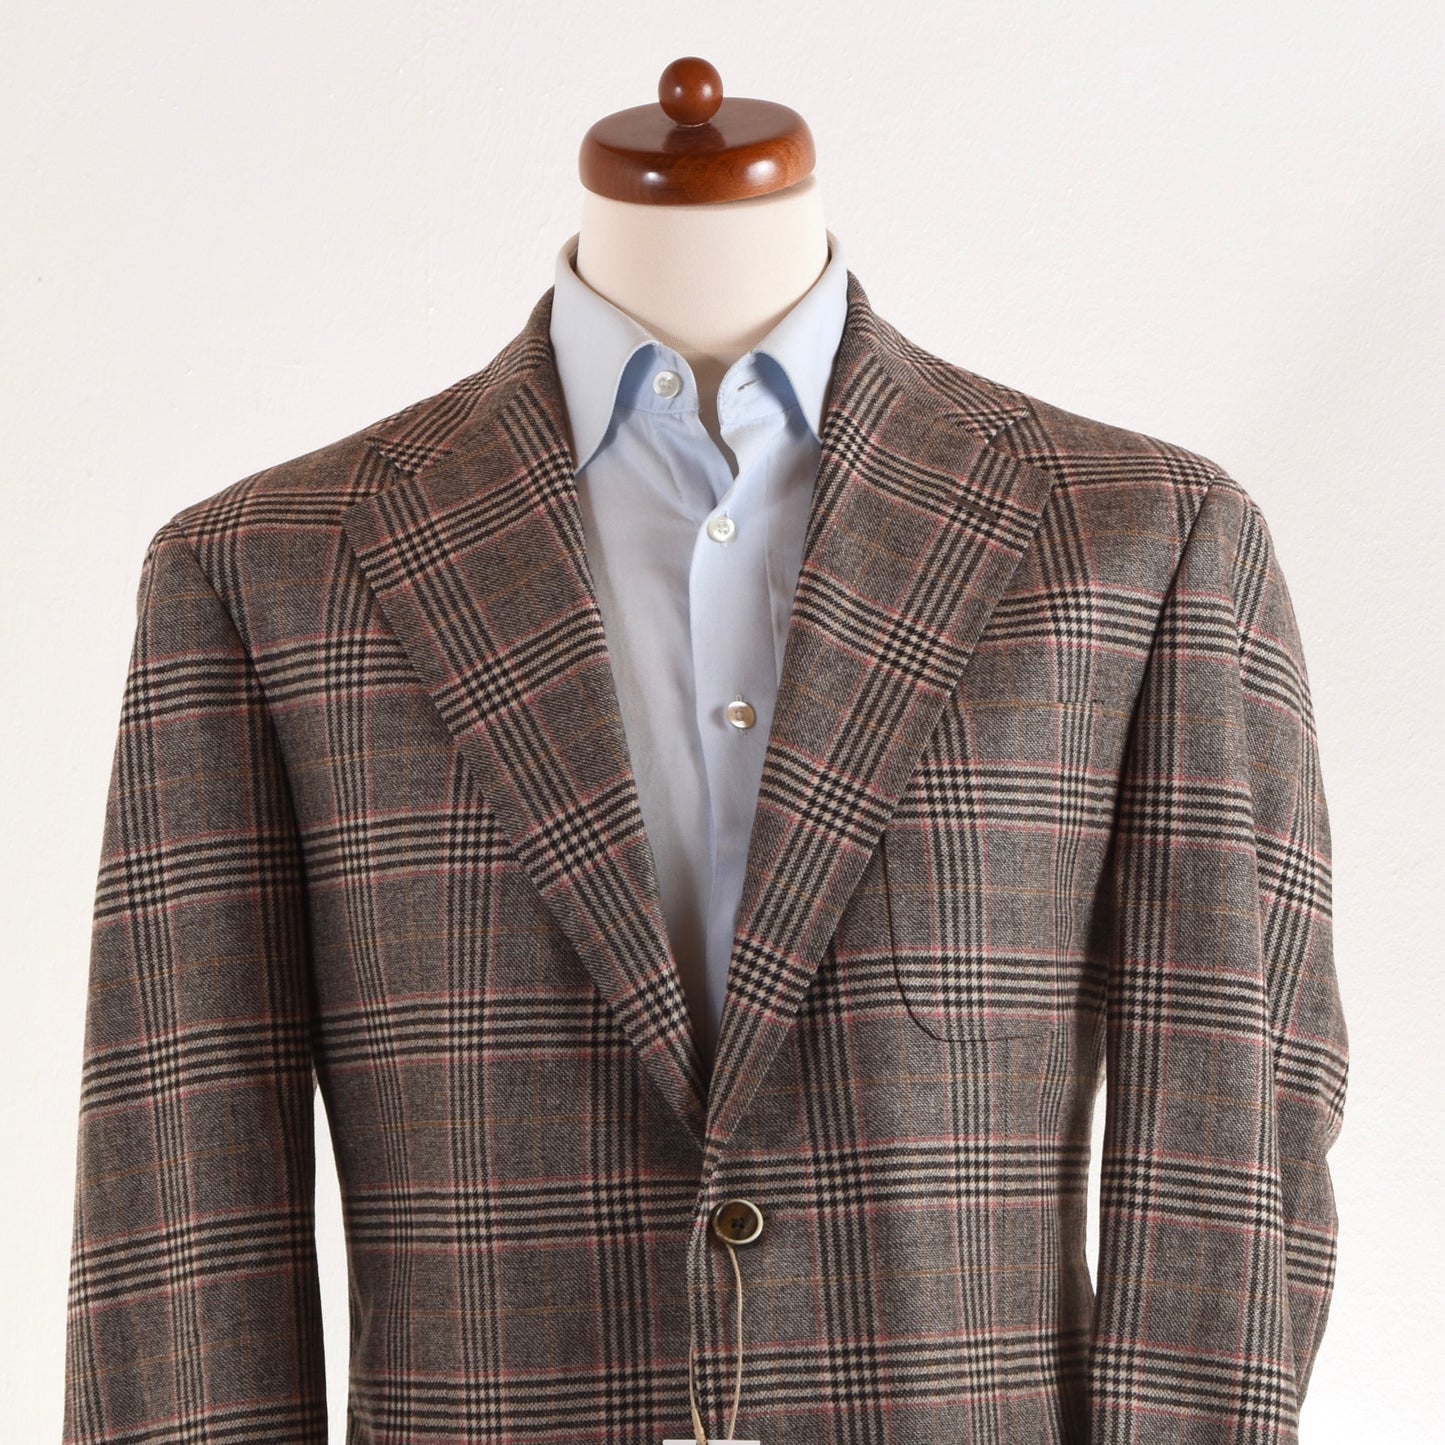 NEW Luigi Bianchi Mantova Wool/Cashmere Jacket Size 52 - Plaid